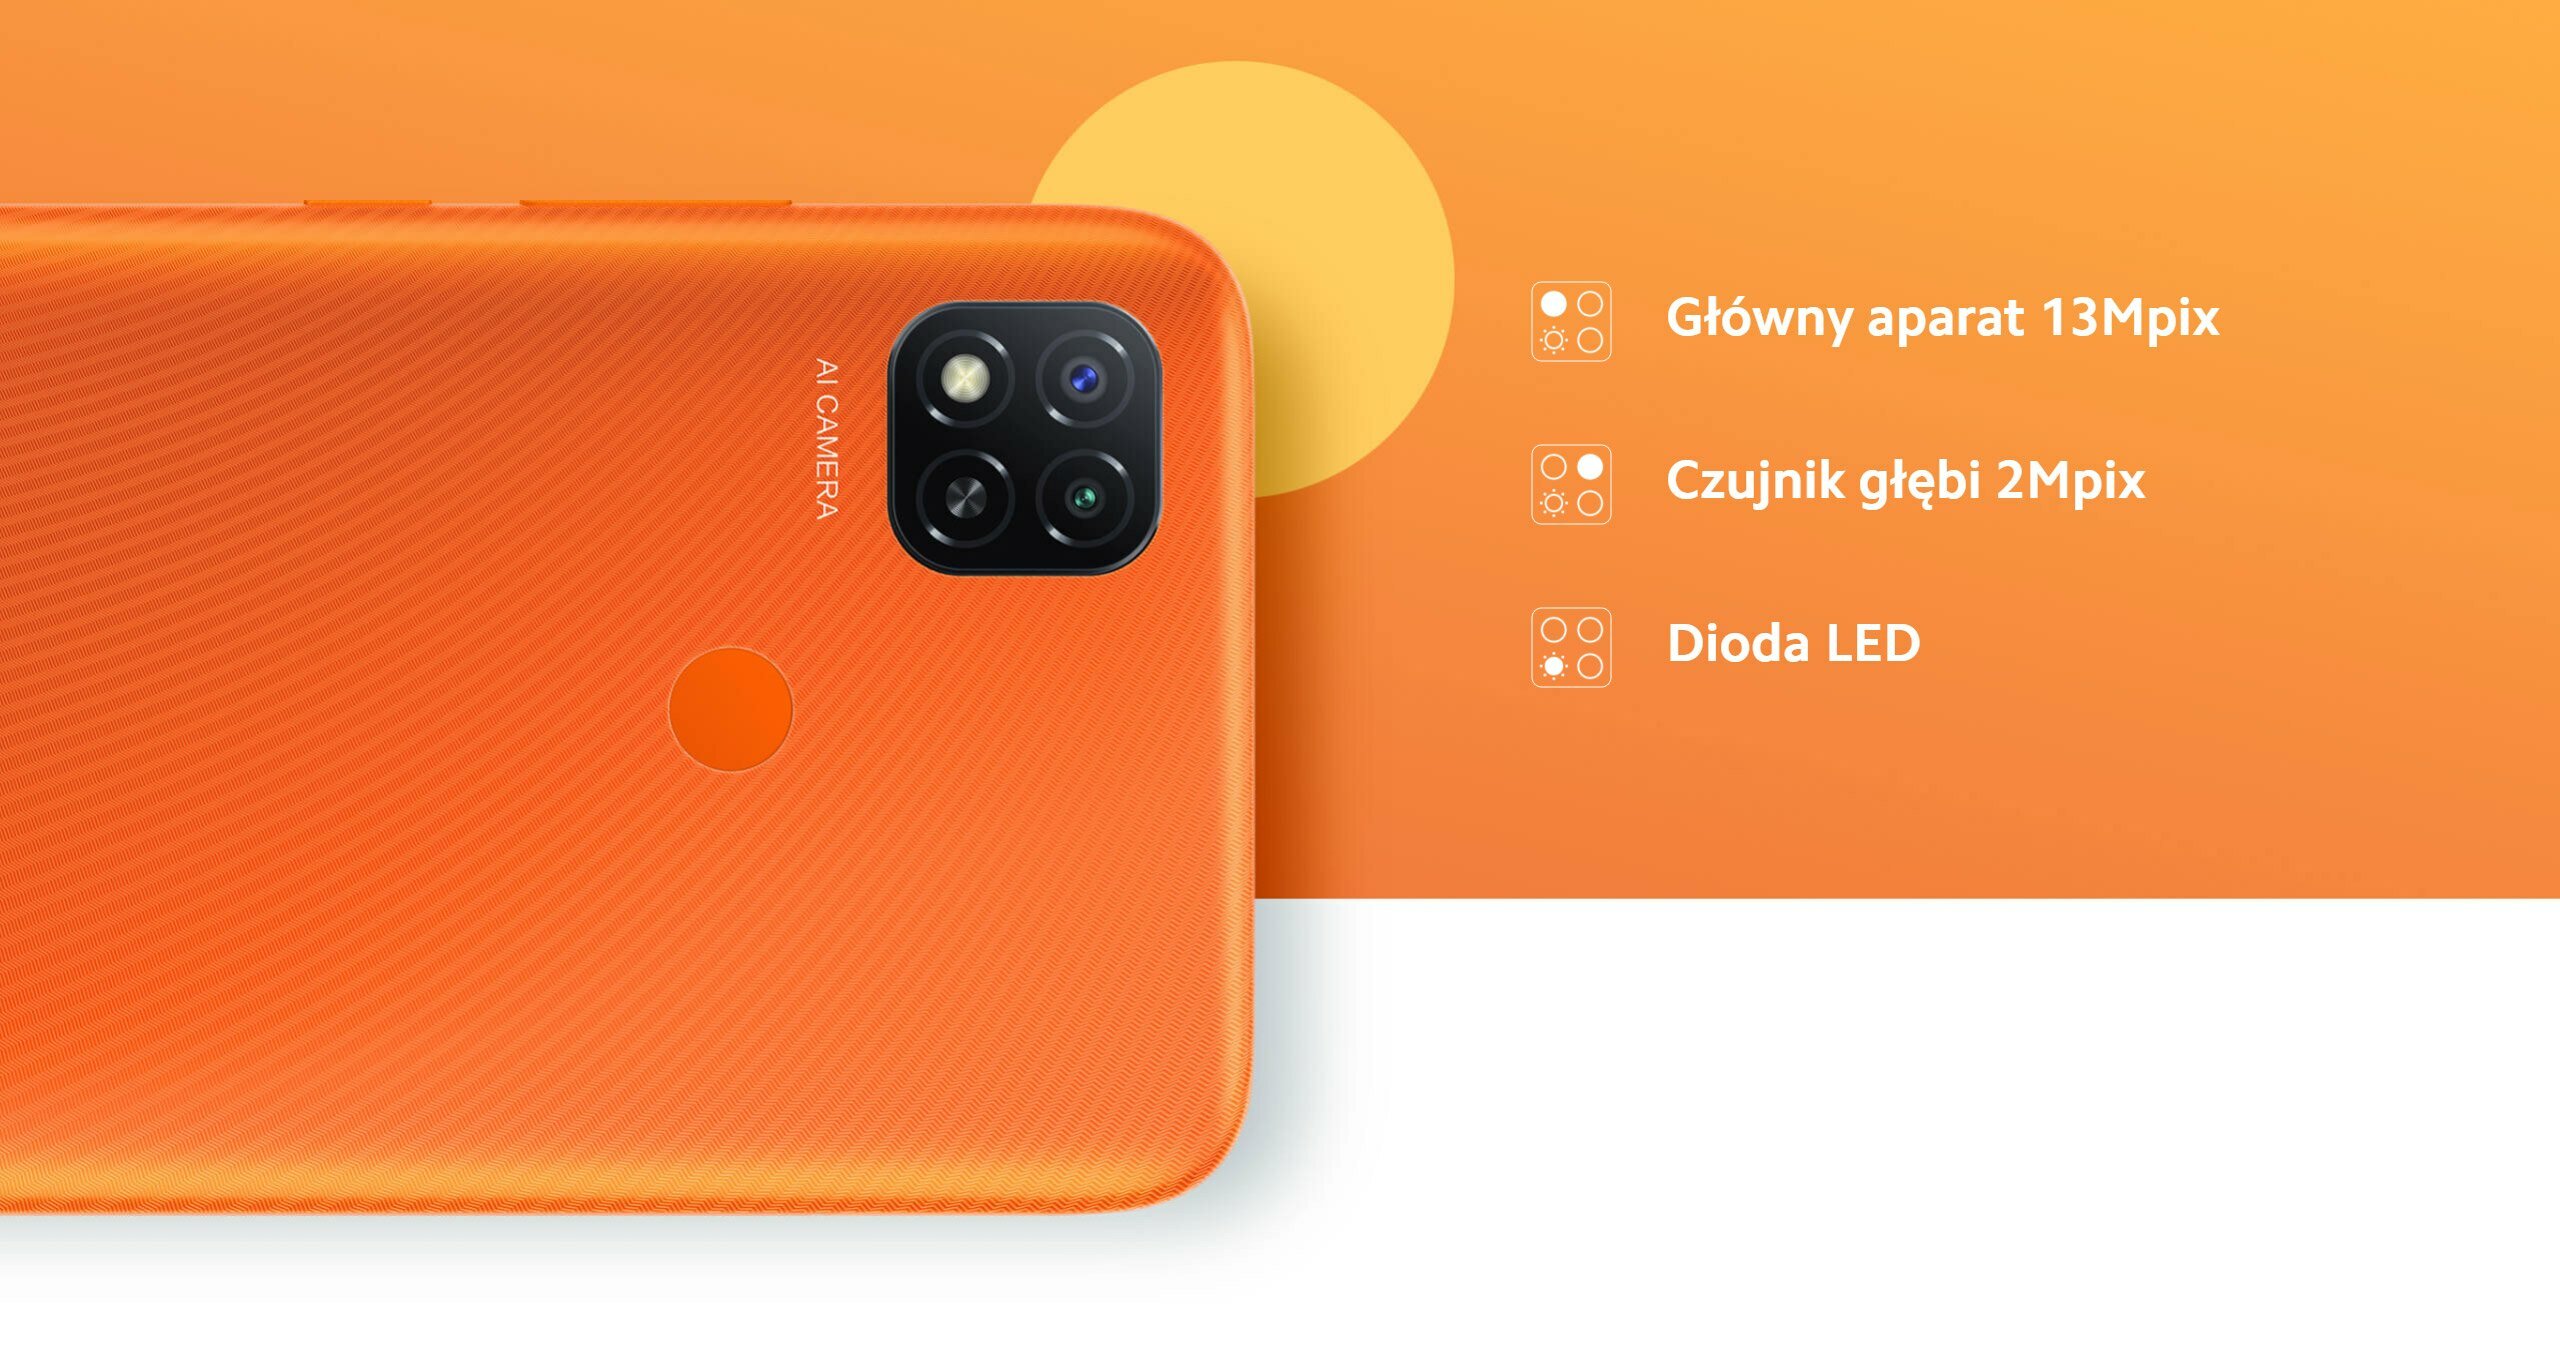 Smartfon Xiaomi Redmi 9C NFC 3/64GB Sunrise Orange widok na dostępne z tyłu telefonu aparaty